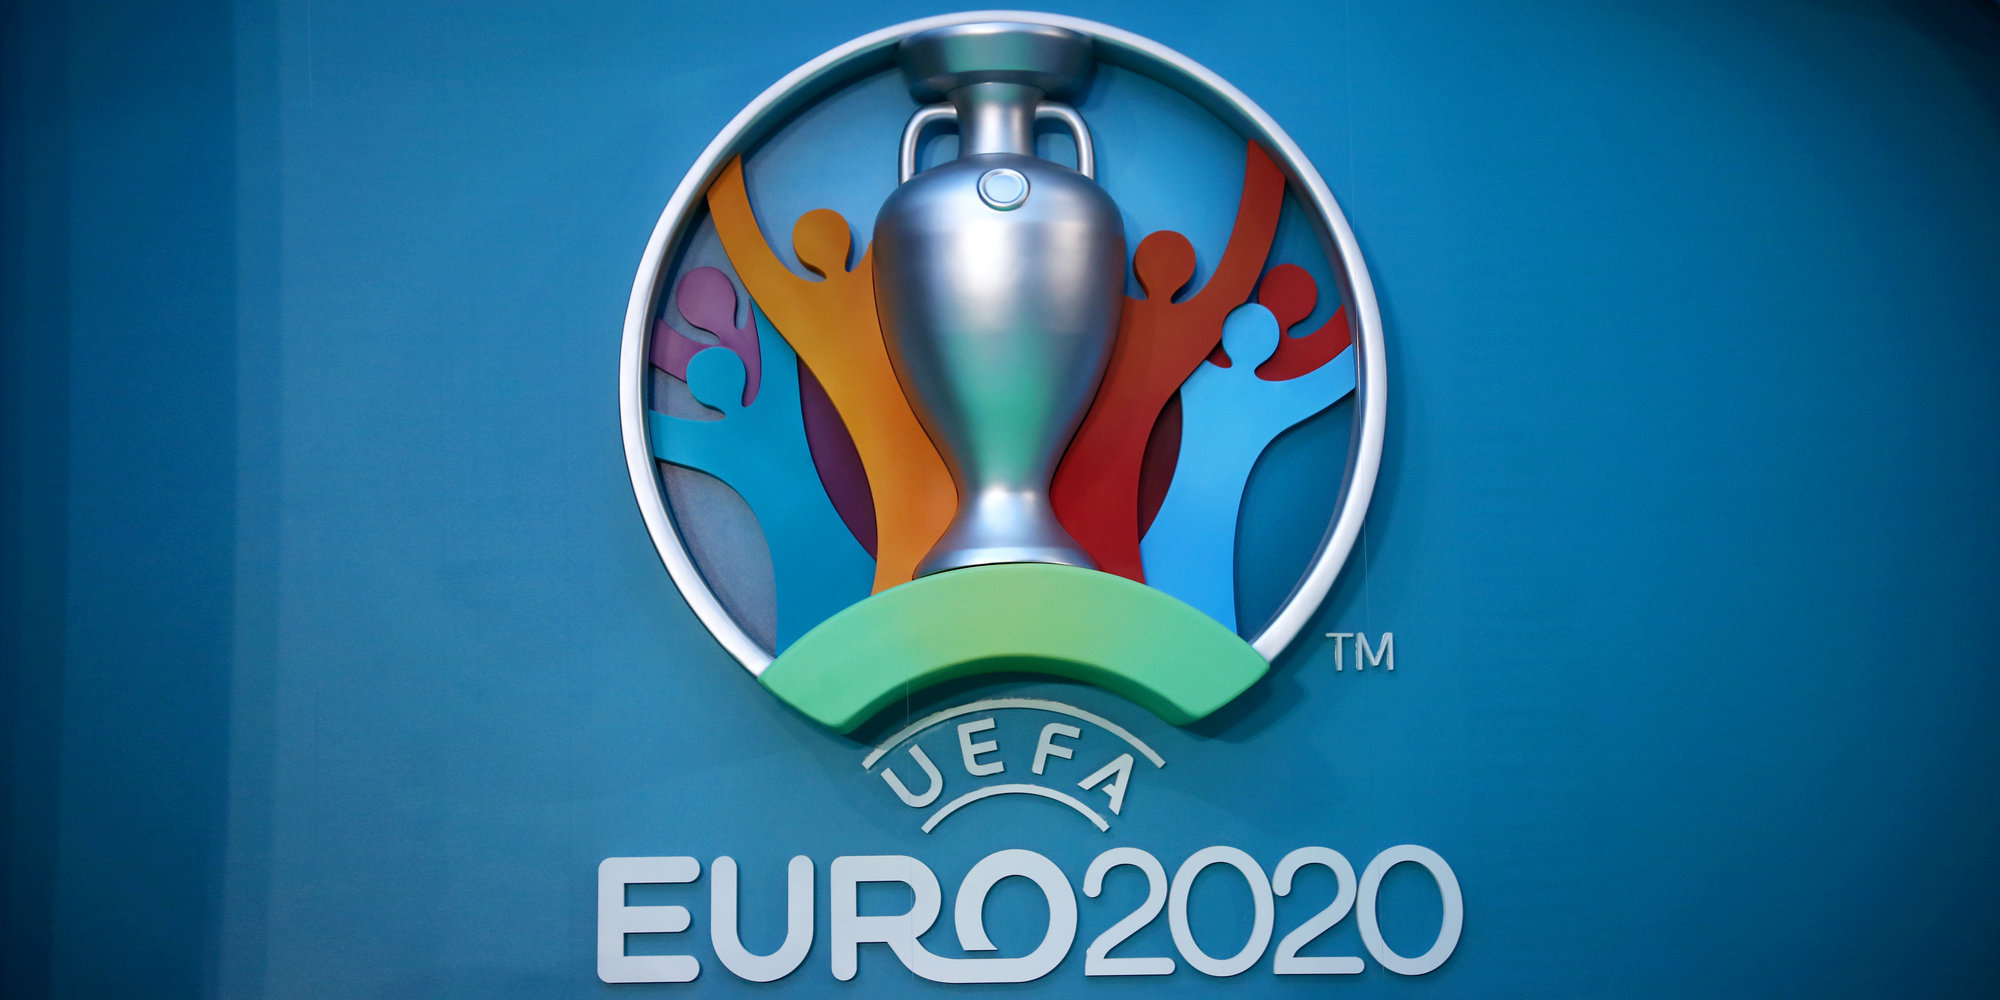 Баку может потерять право принять ЕВРО-2020